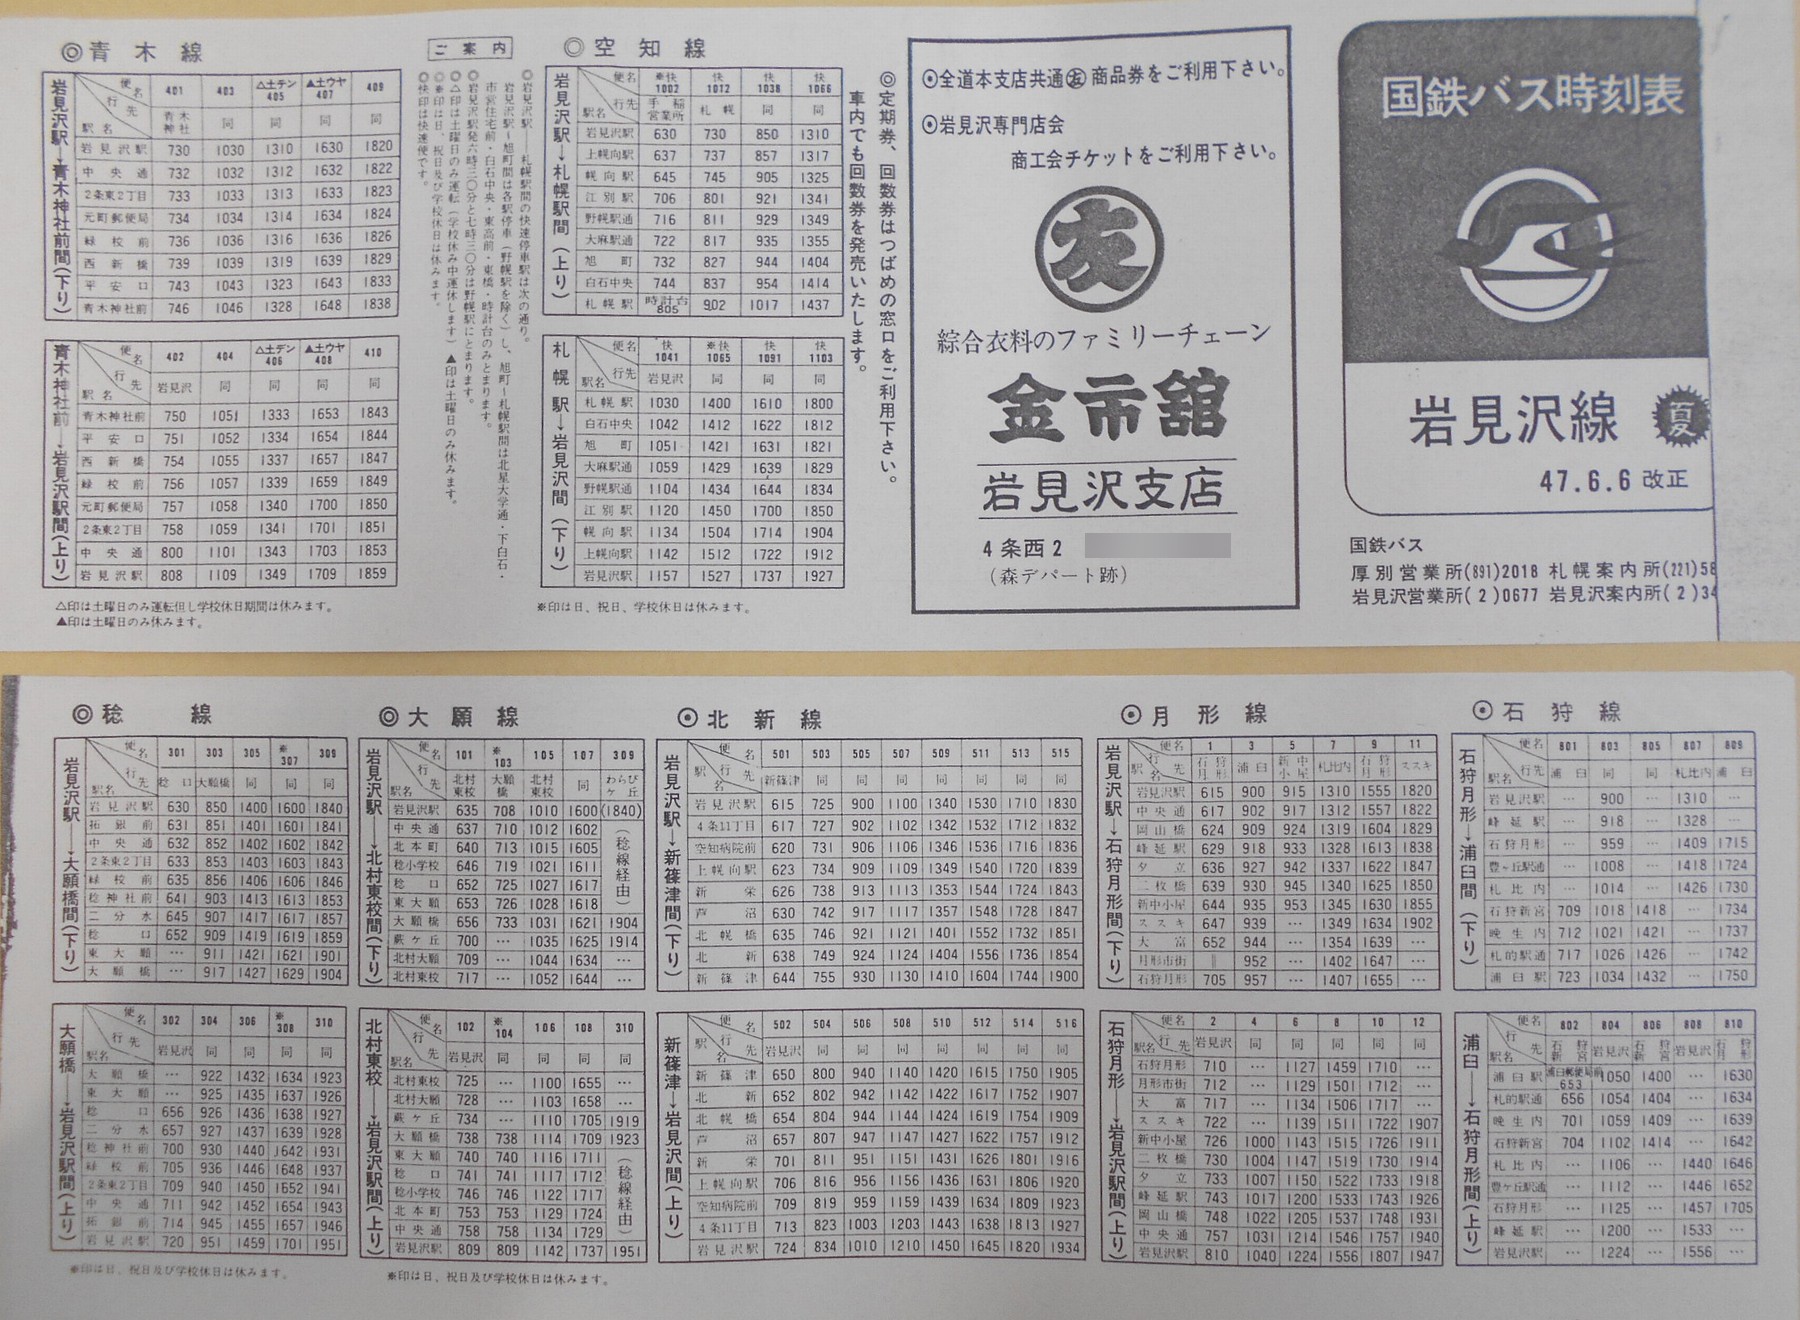 1972-06-06改正_国鉄バス_岩見沢線時刻表